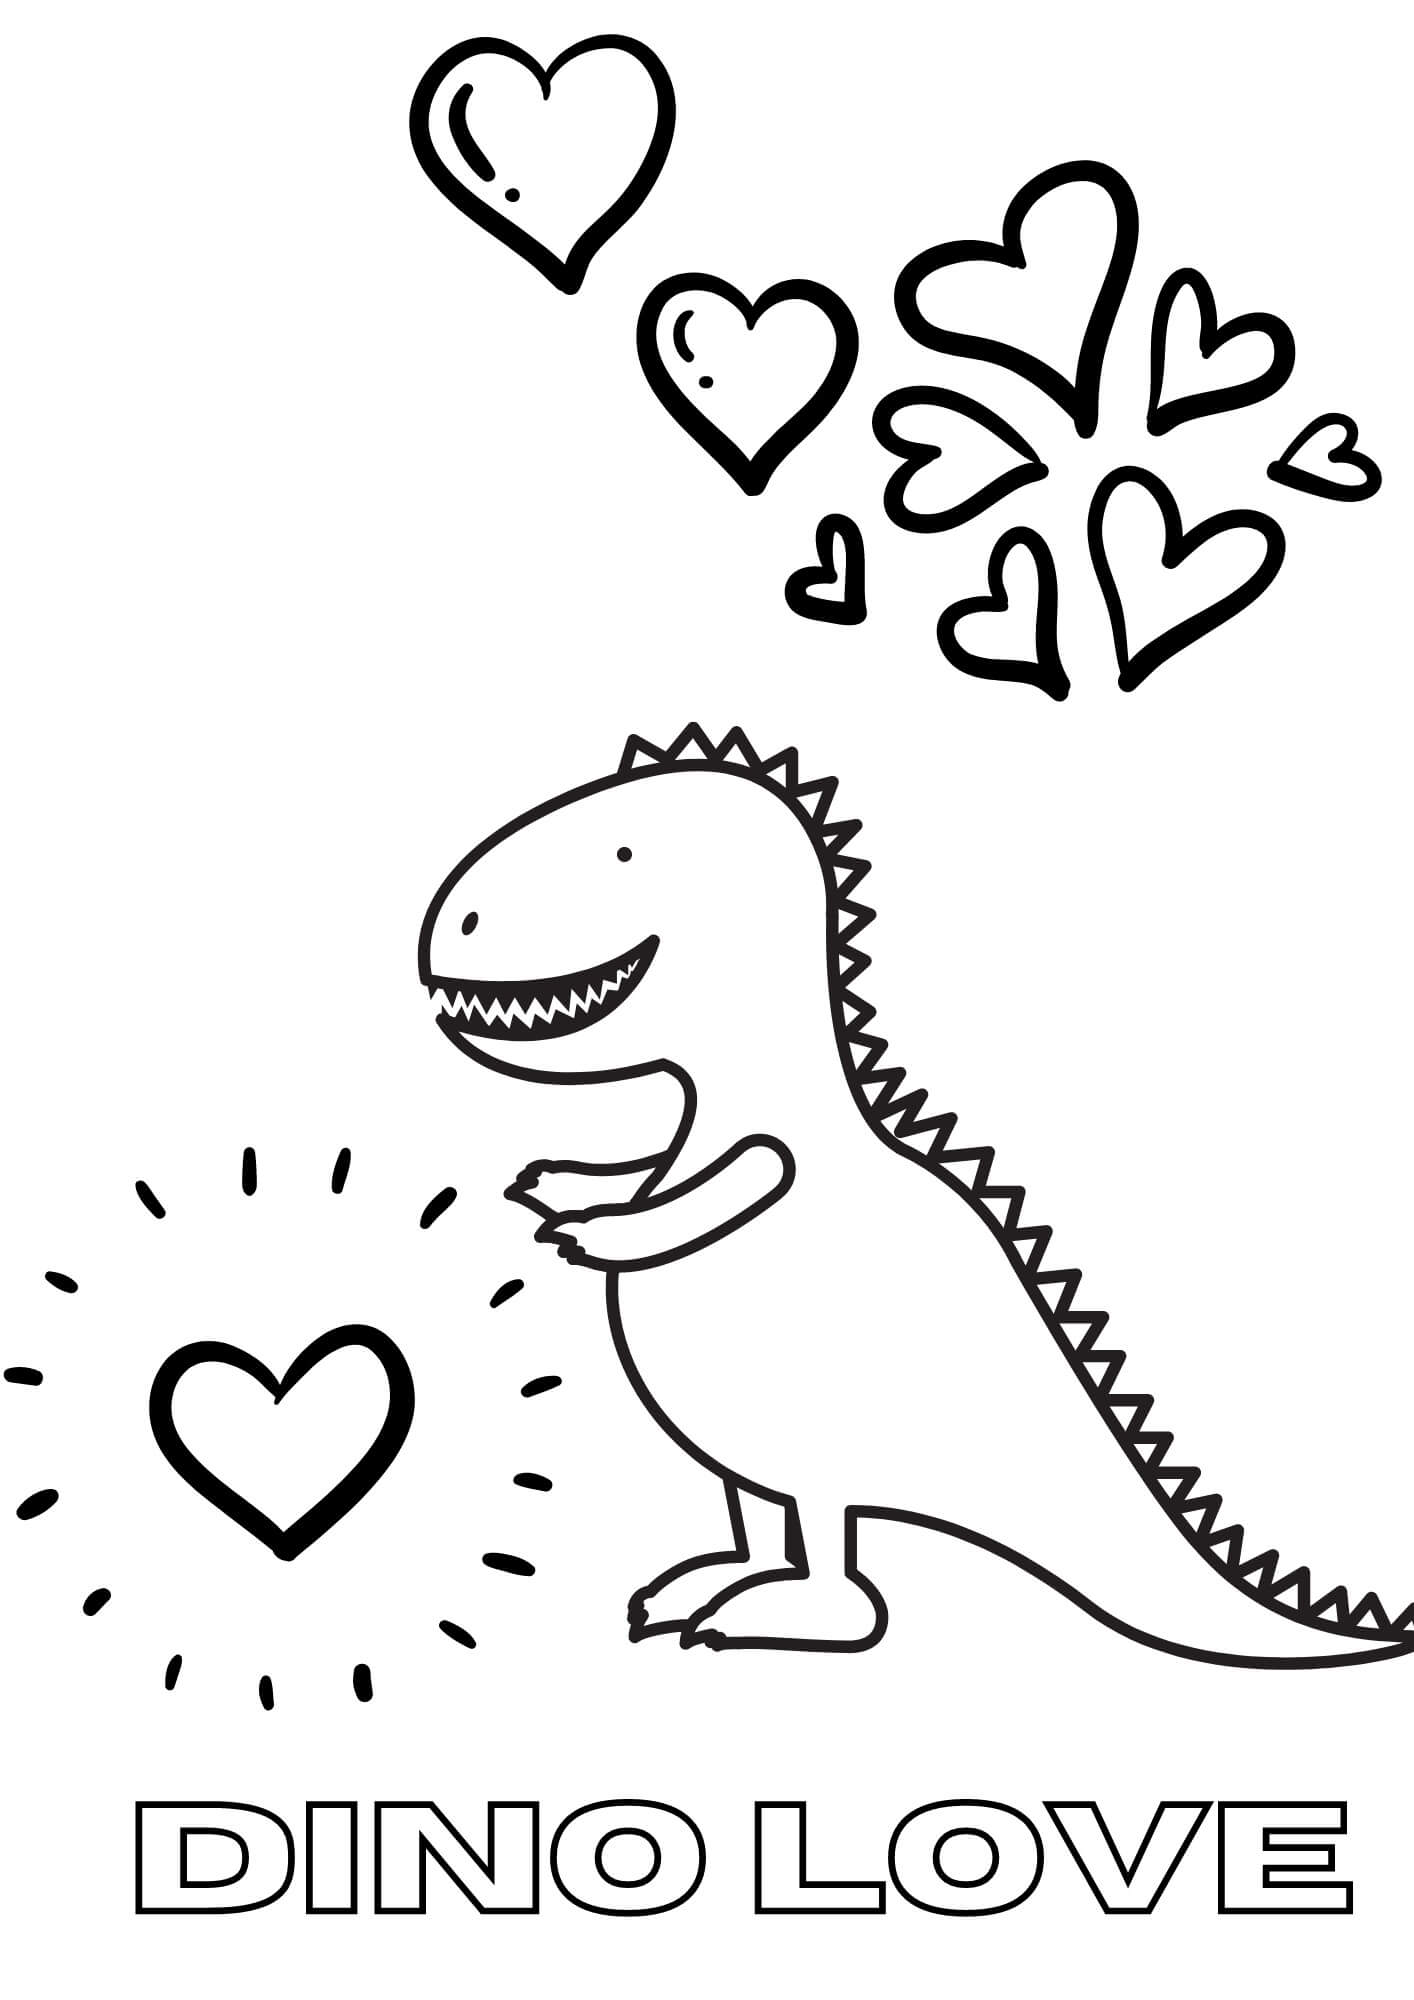 사랑에 빠진 공룡 coloring page